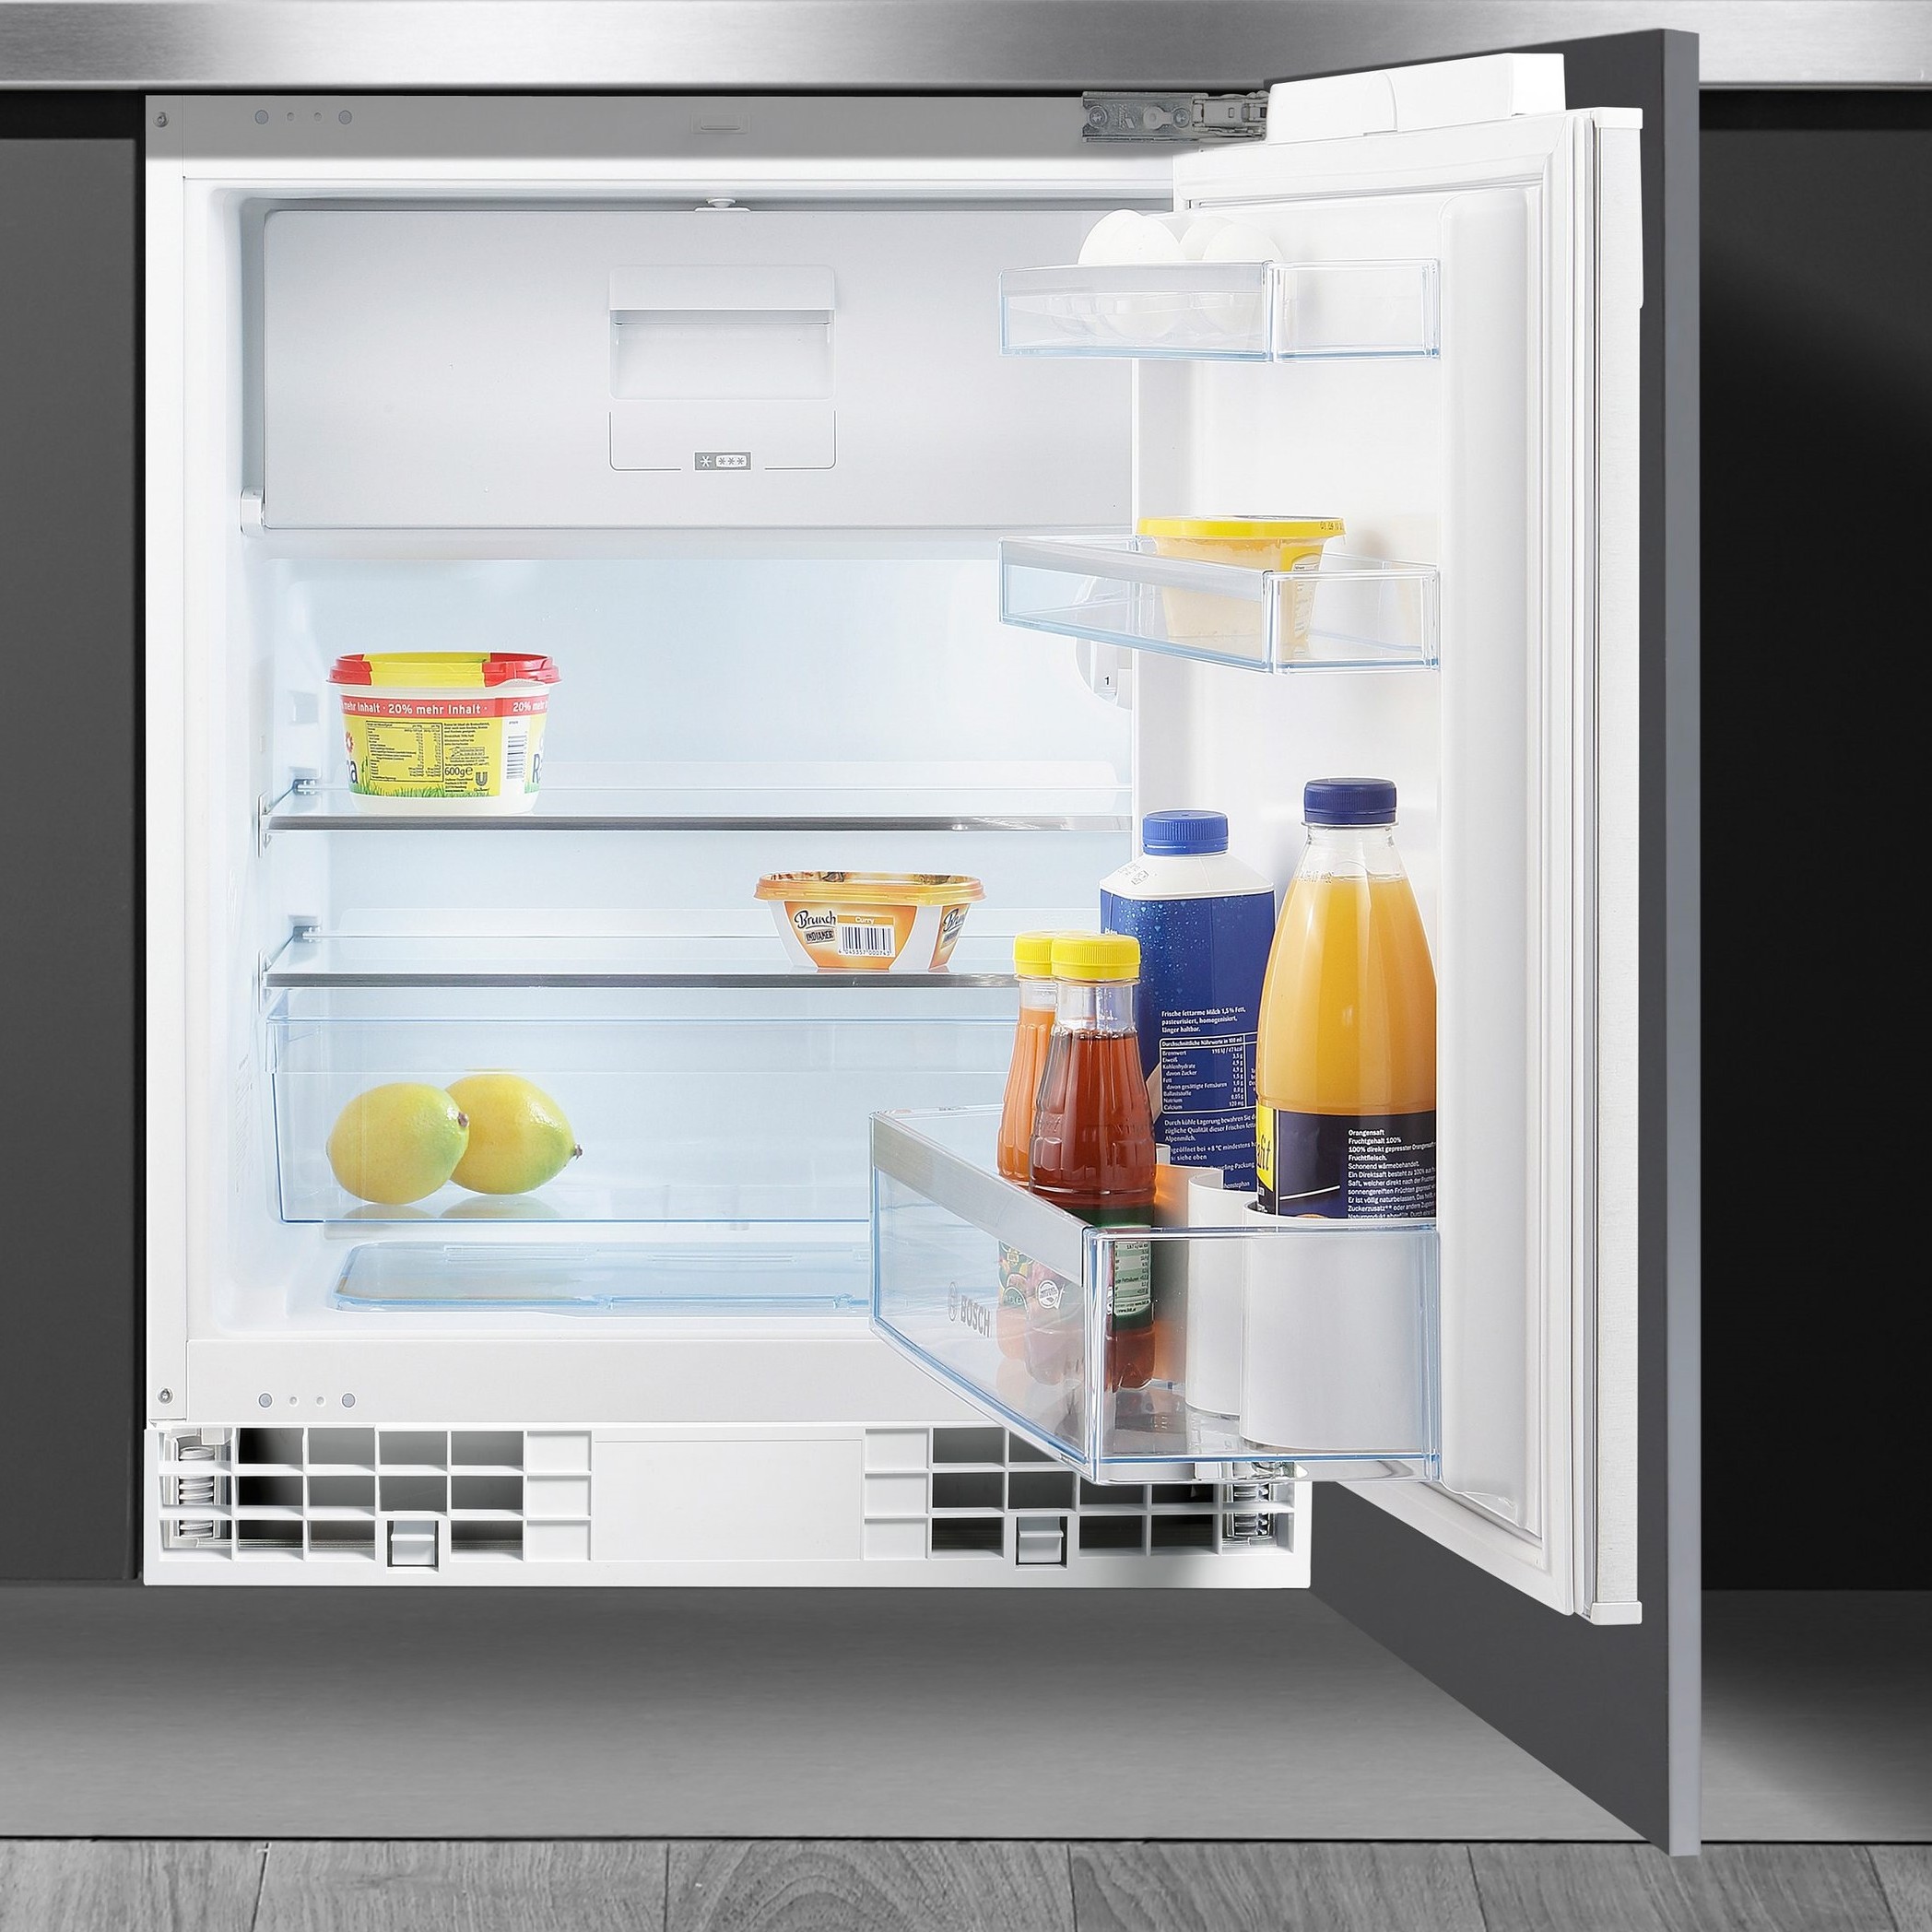 Встраиваемые холодильники ру. Встраиваемый холодильник Bosch kur15a50. Встраиваемый холодильник ЭВЕЛЮКС 2202. Холодильник Bosch Kur 15a50 ru. Холодильник под столешницу MT 08 f079564.